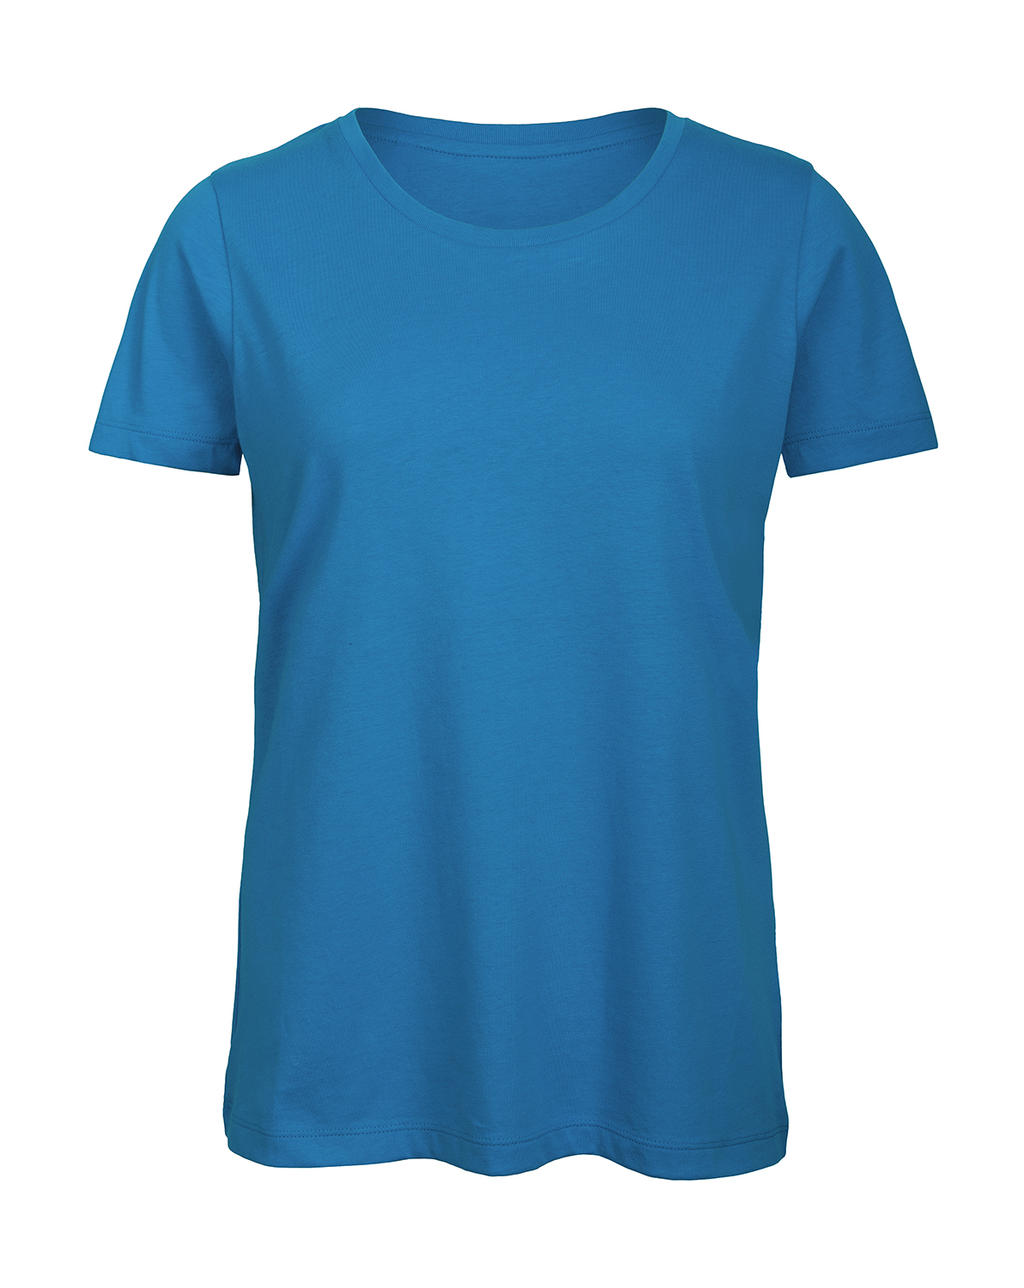 Tričko dámské B&C Jersey - světle modré, XXL